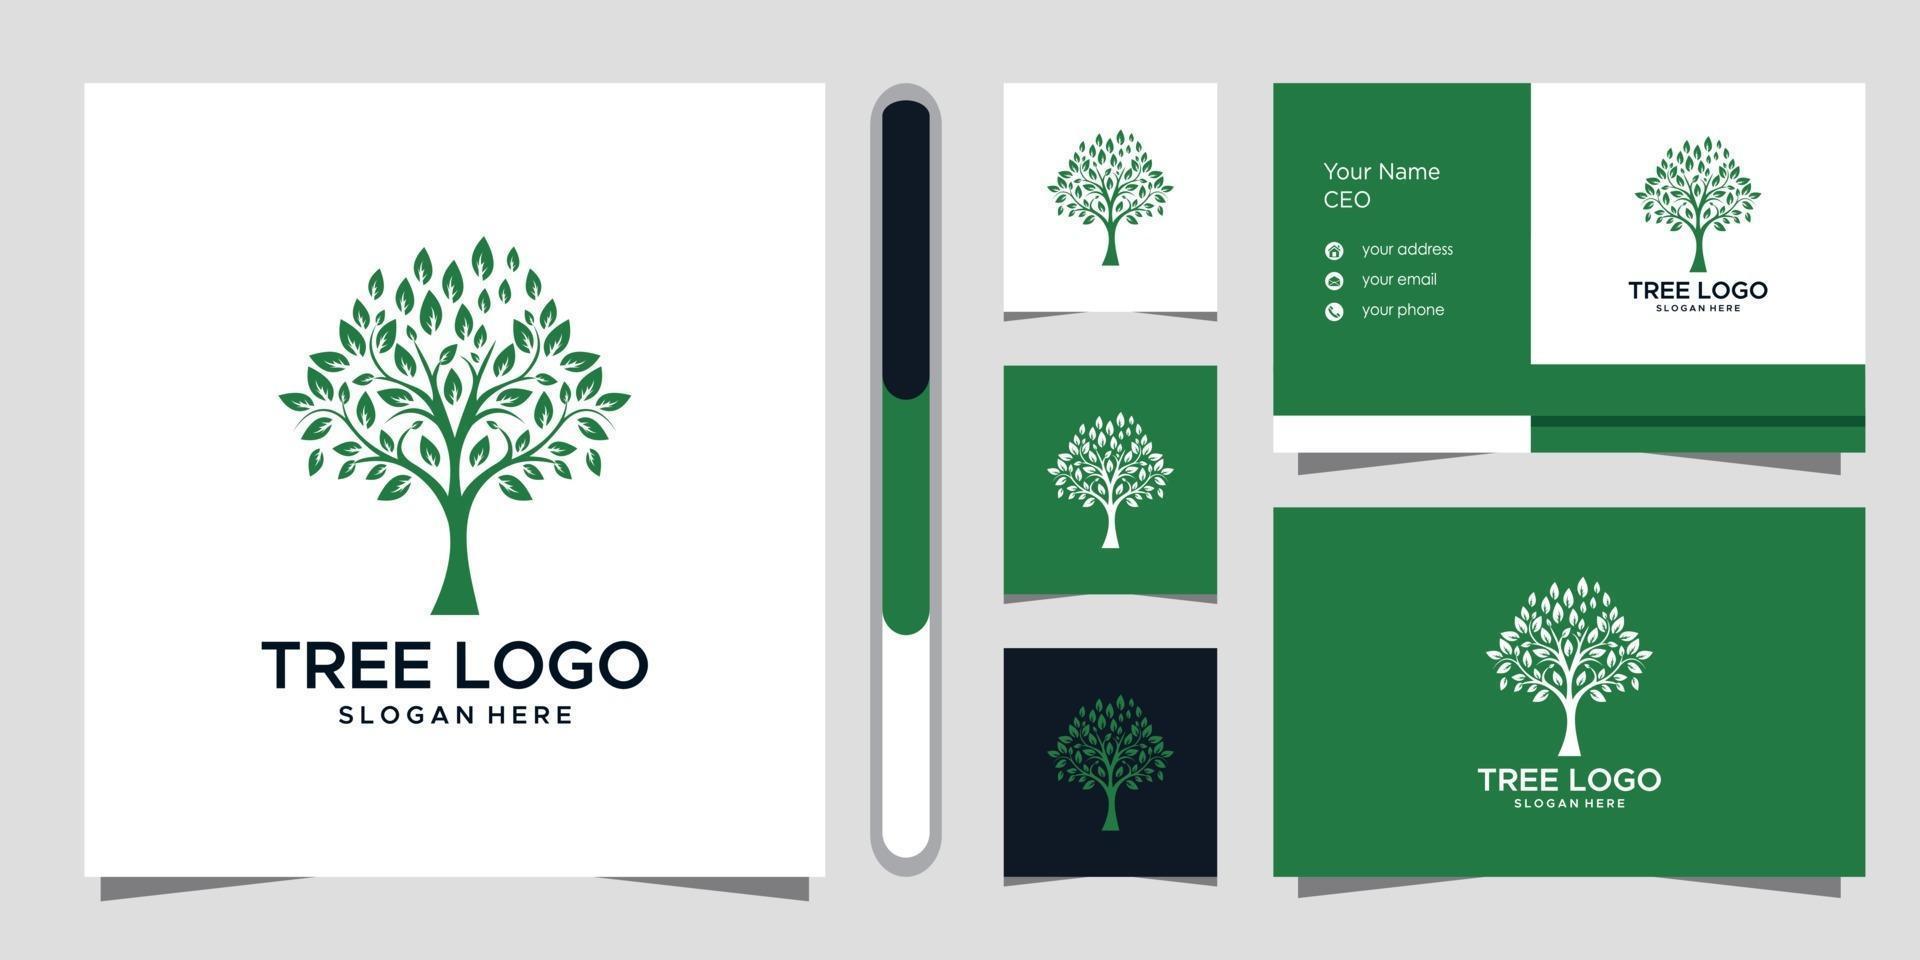 conception de logo d'arbre et carte de visite vecteur